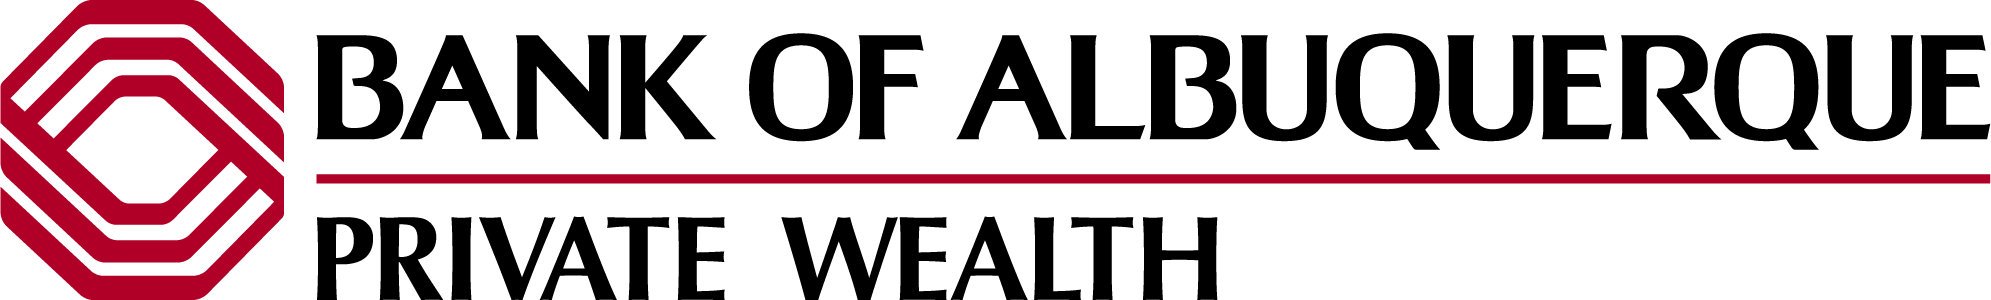 Bank of Albuquerque Private Wealth logo